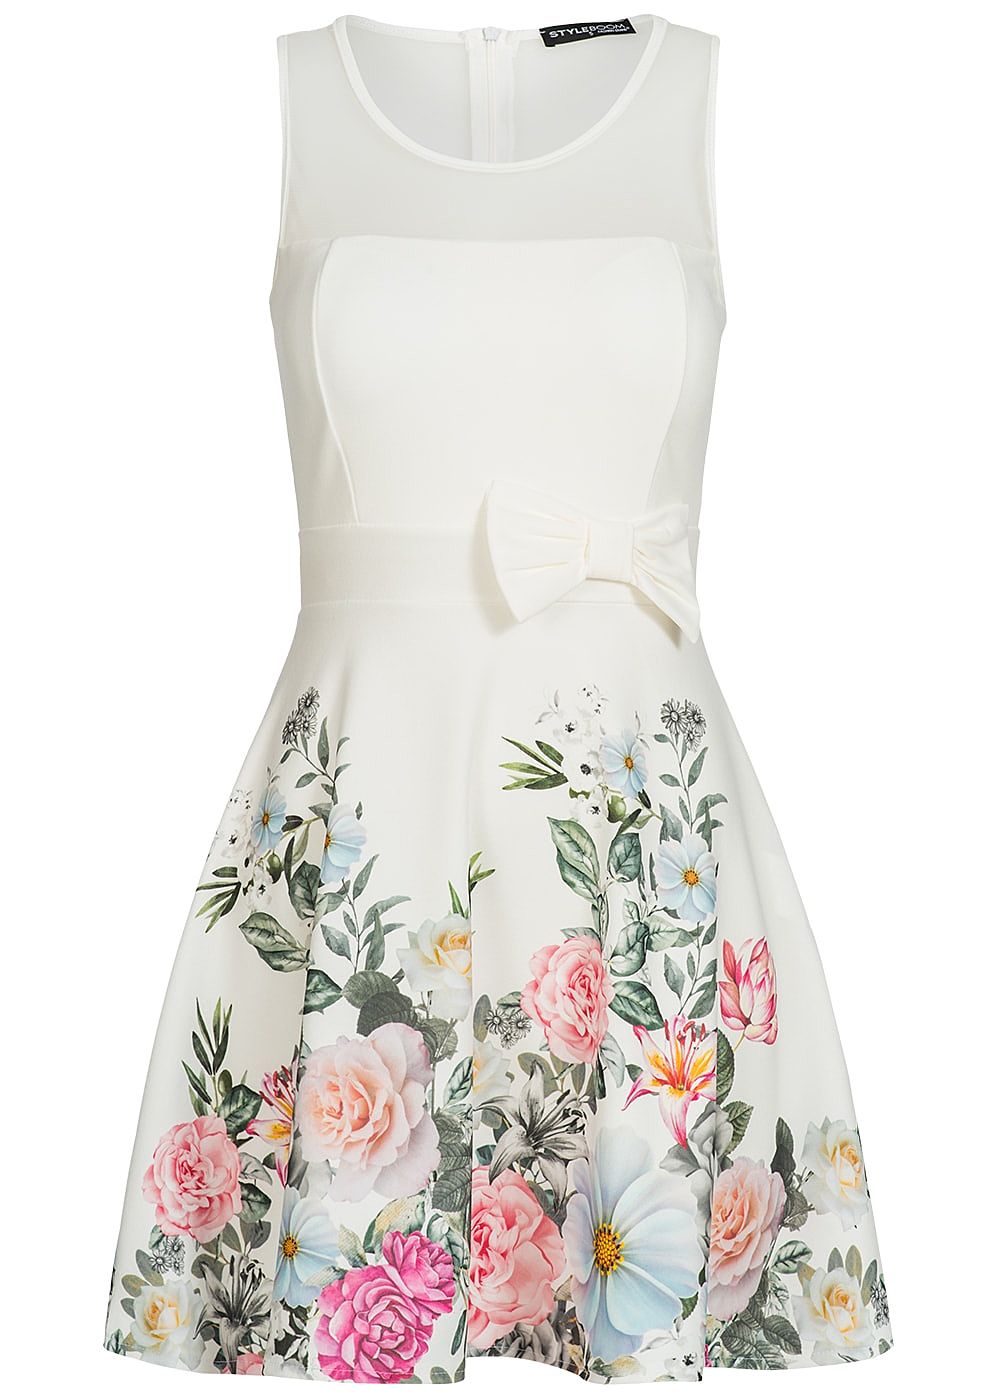 Styleboom Fashion Damen Mini Kleid Blumen Print Mesh Detail Schleife Weiss Rosa Grun